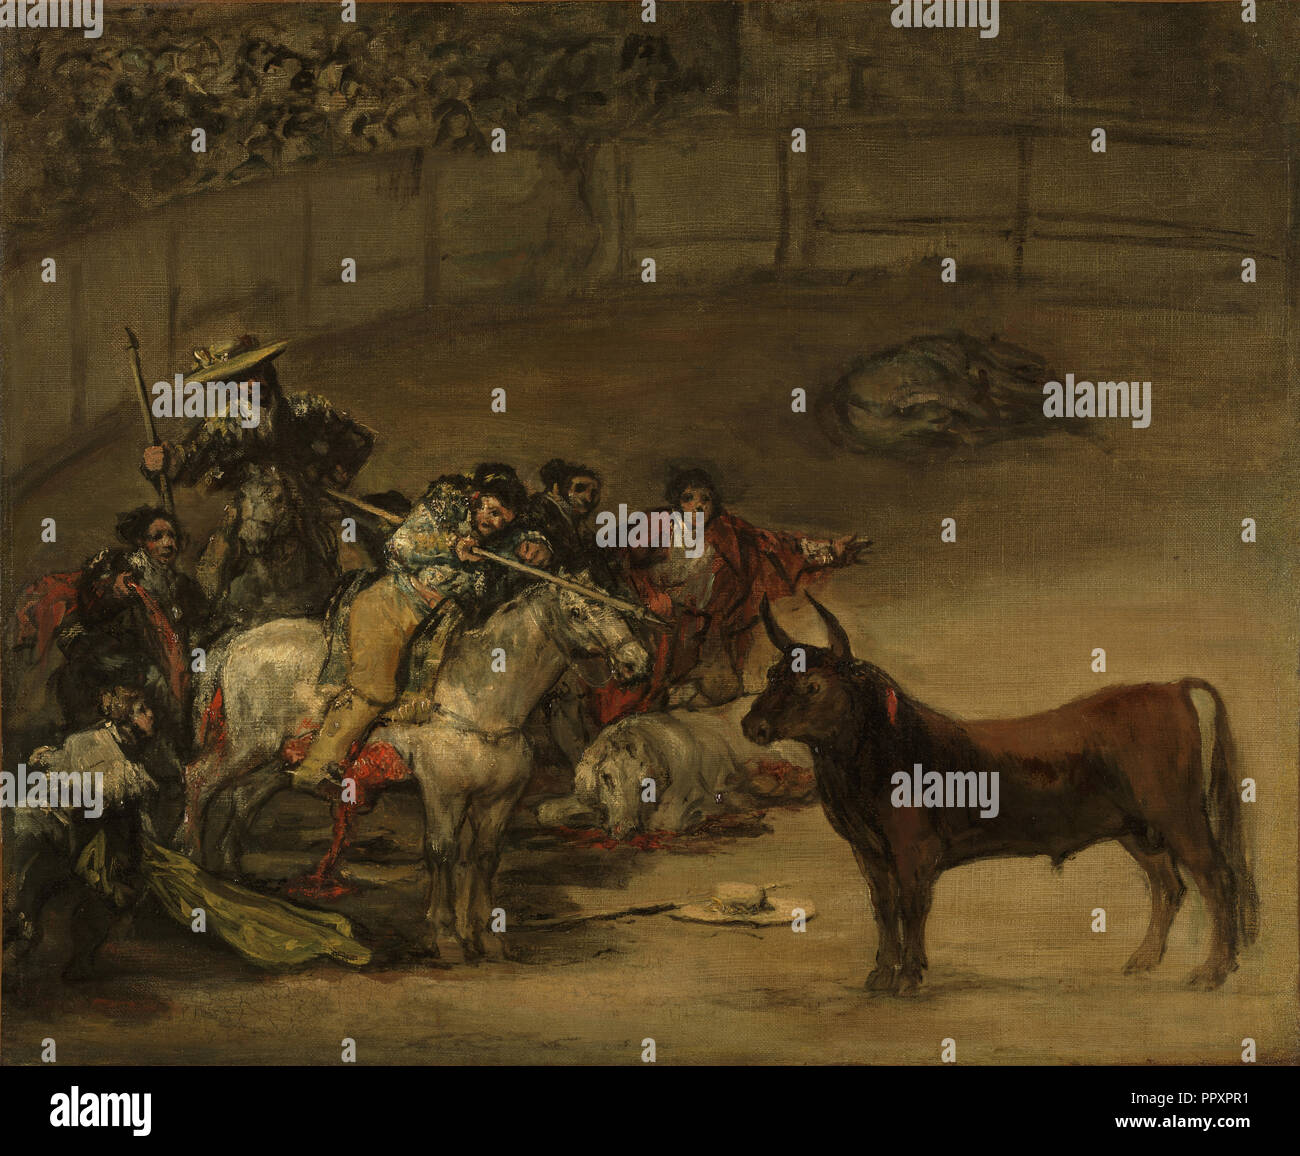 Bullfight, Suerte de Varas; Francisco José de Goya y Lucientes, Francisco de Goya, Spanish, 1746 - 1828, 1824; Oil on canvas Stock Photo